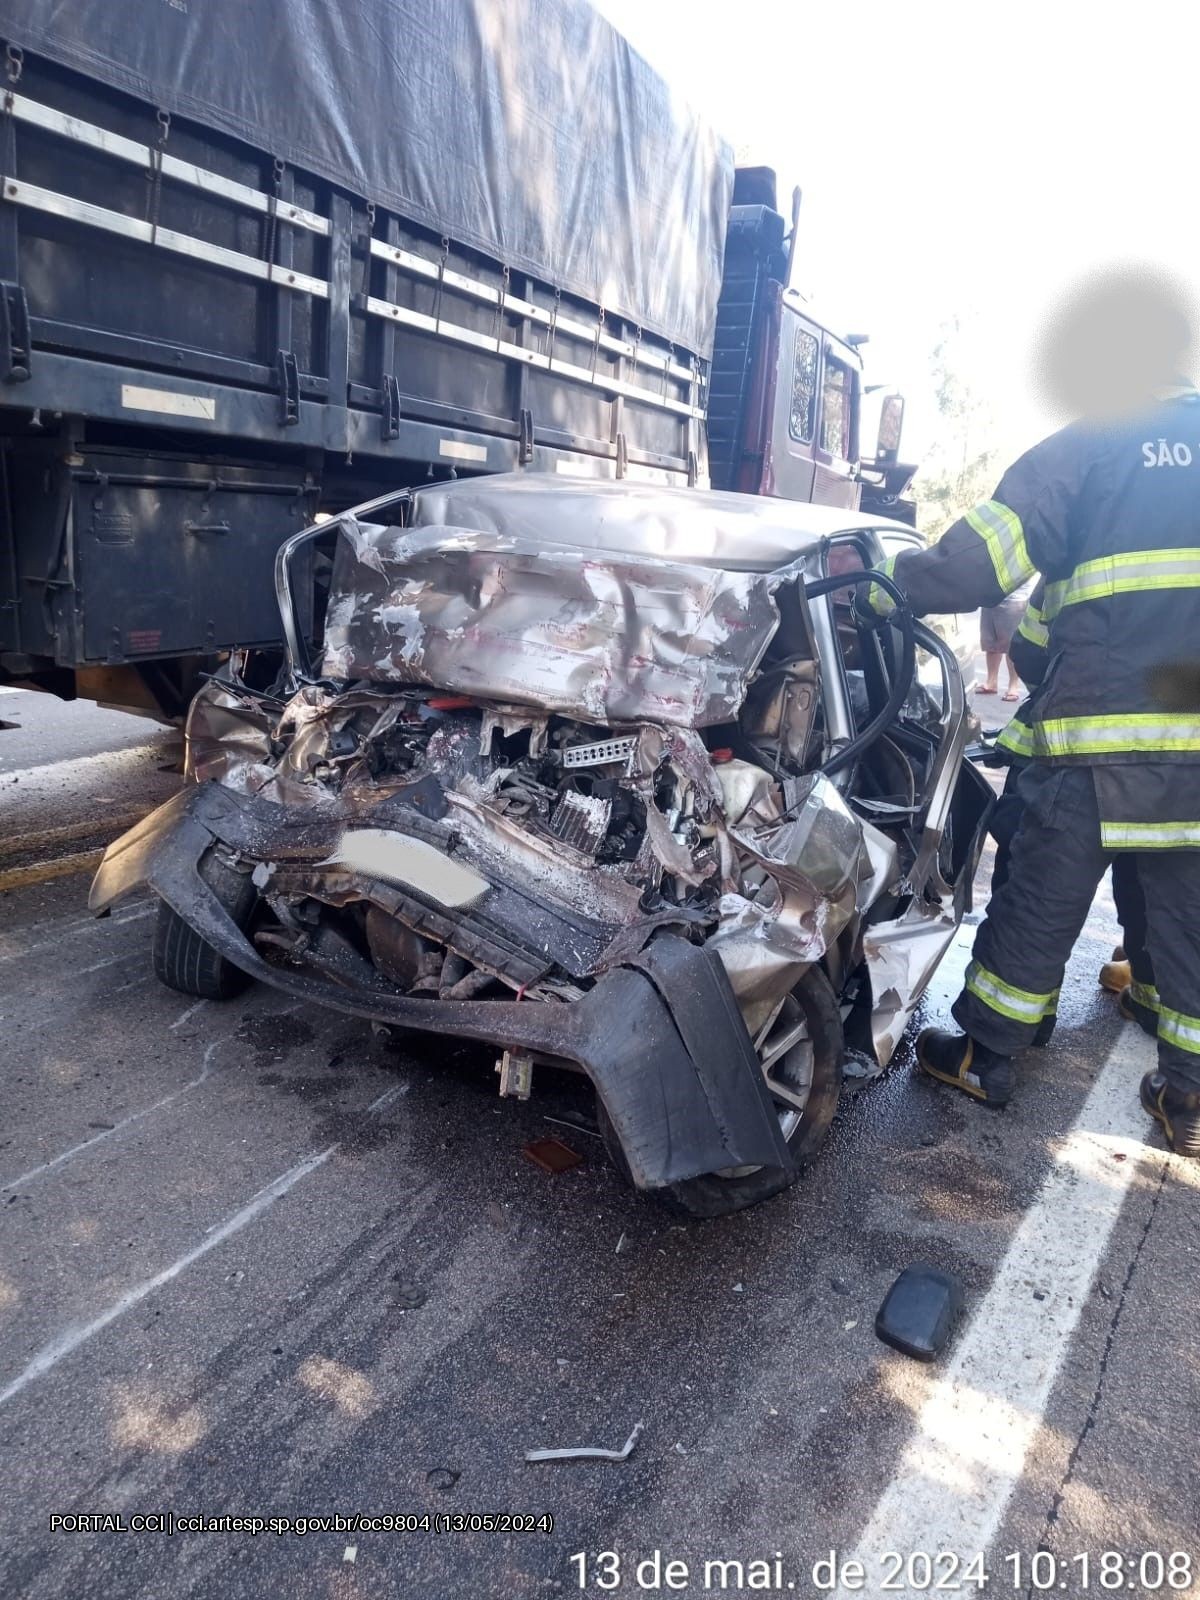 Motorista de carro morre após bater em caminhão na SP 300 em Jumirim